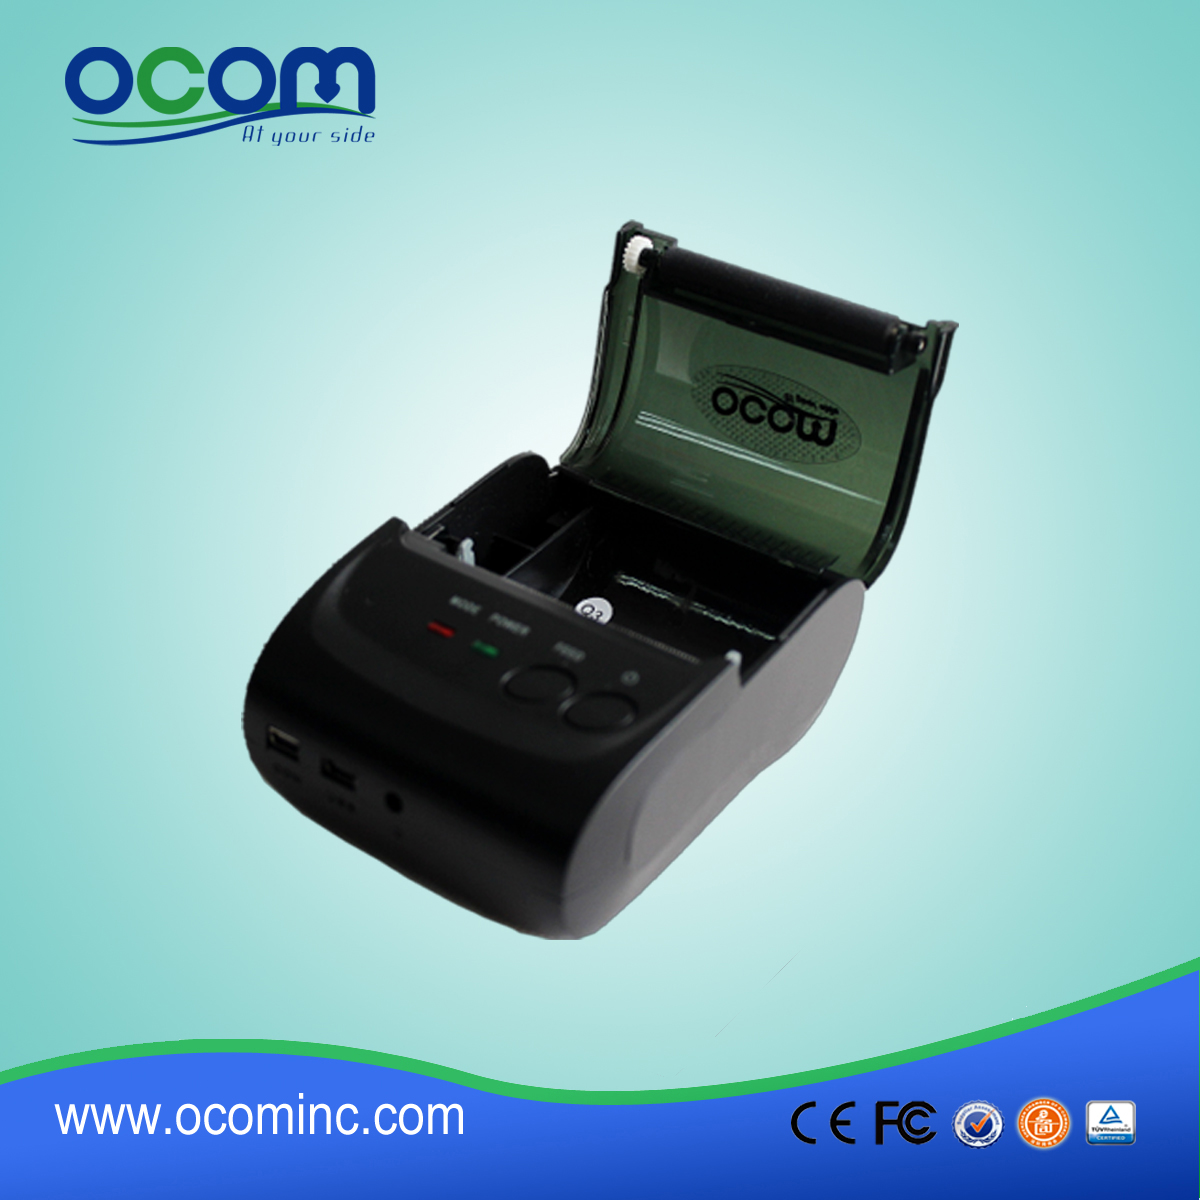 58毫米小型便携式蓝牙安卓POS热敏打印机 OCPP-M05